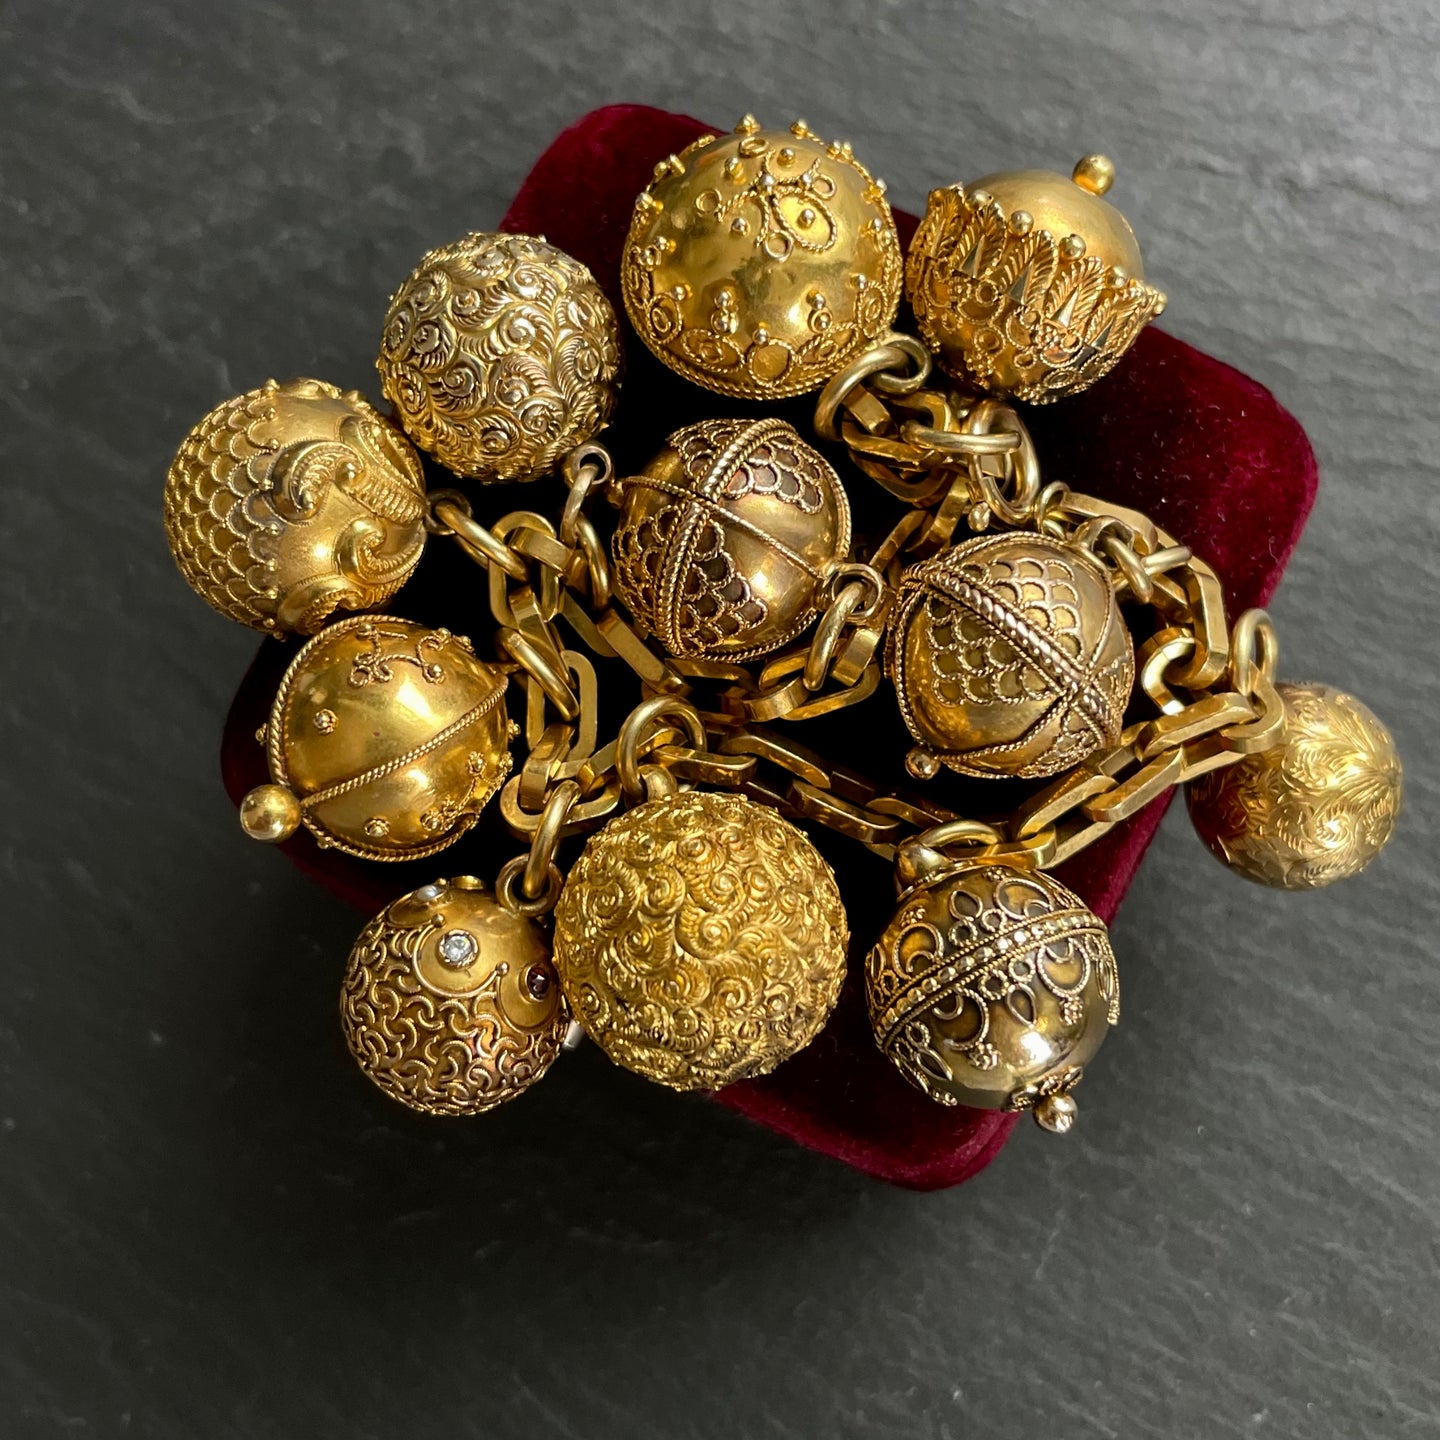 Bespoke Gold Ball Bracelet